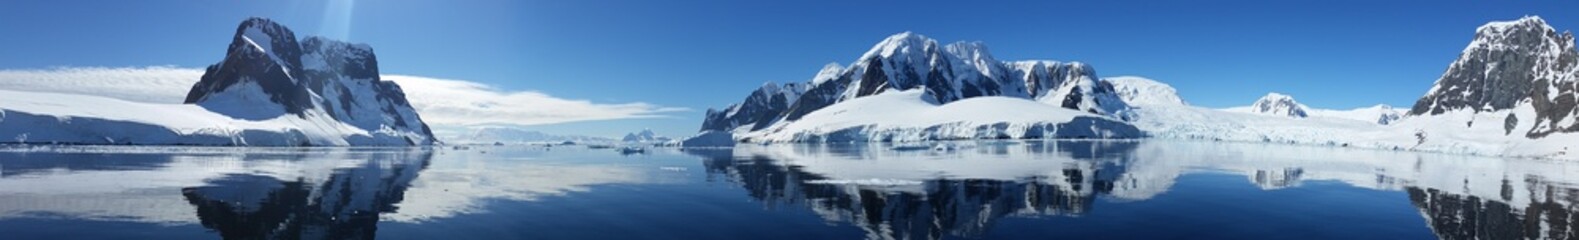 zdjęcie panoramiczne wybrzeża antarktydy w zimny piękny słoneczny dzień